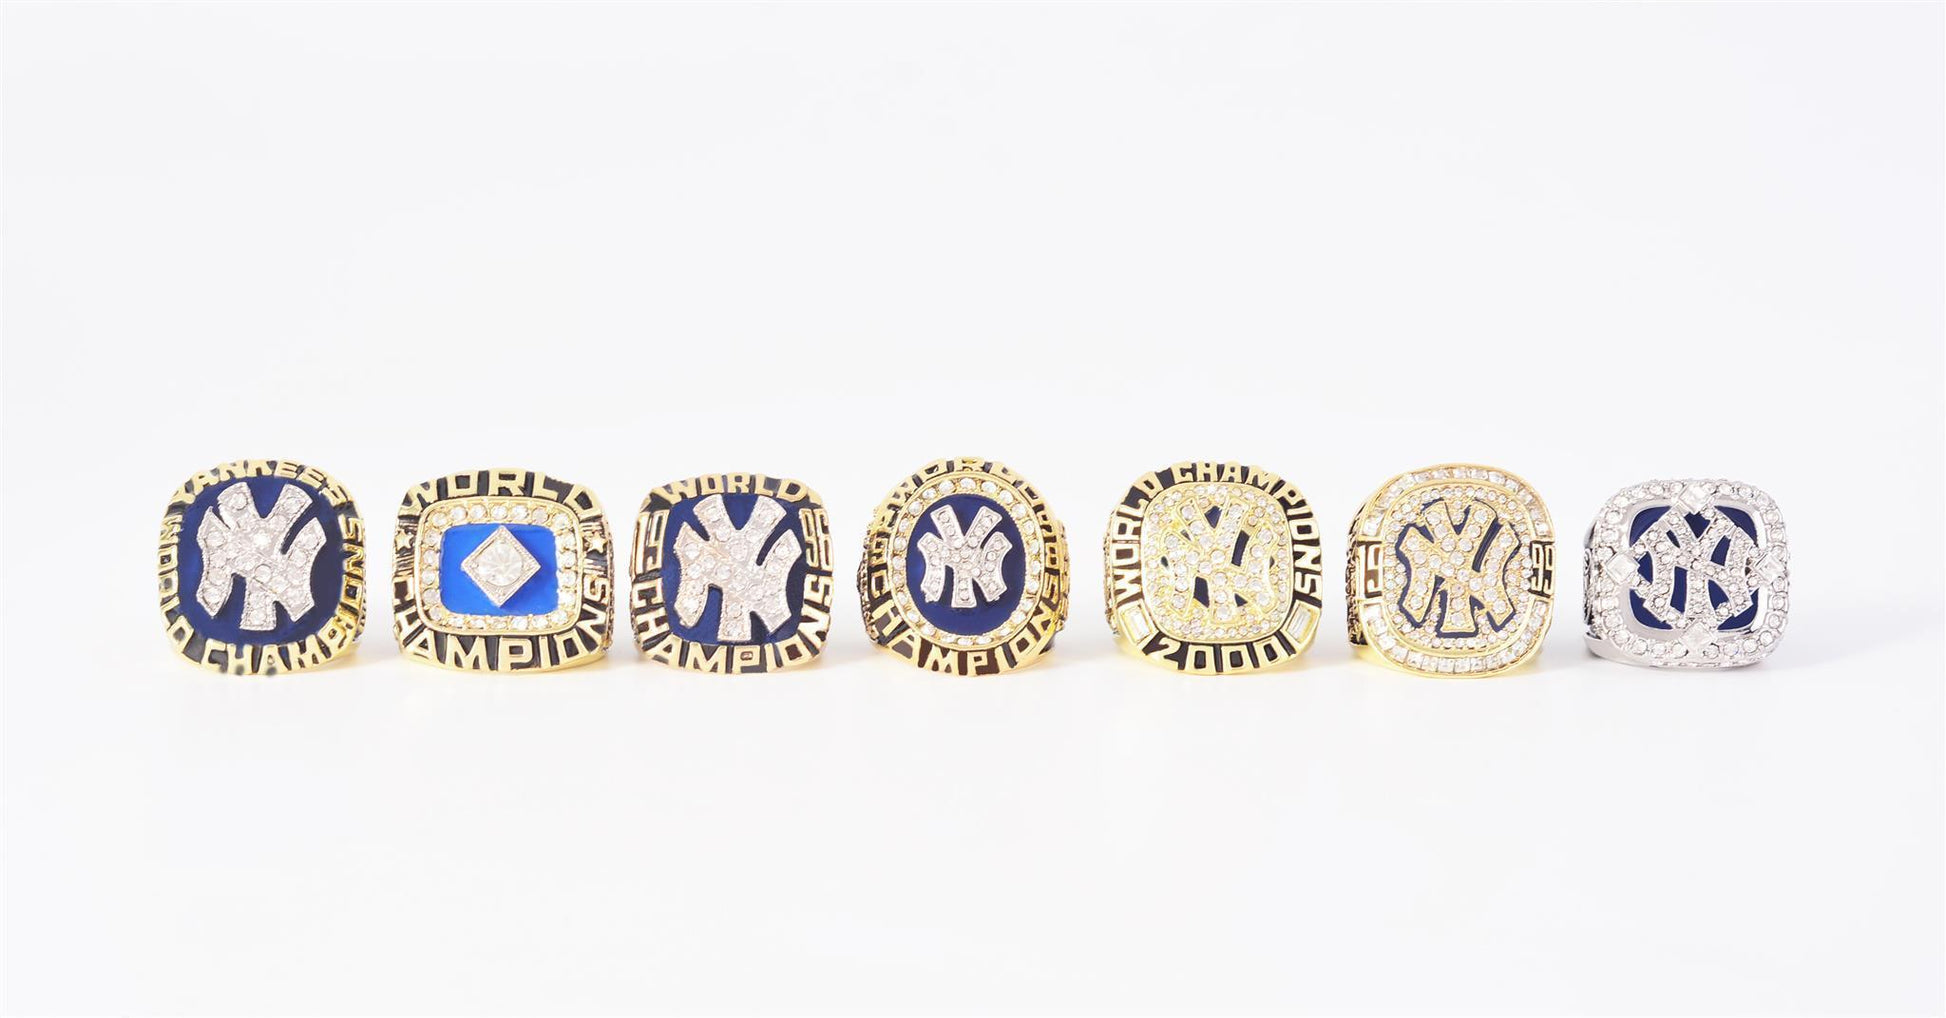 New York Yankees World Series 7 Ring Set (1977, 1978, 1996, 1998, 1999, 2000, 2009) - Rings For Champs, NFL rings, MLB rings, NBA rings, NHL rings, NCAA rings, Super bowl ring, Superbowl ring, Super bowl rings, Superbowl rings, Dallas Cowboys